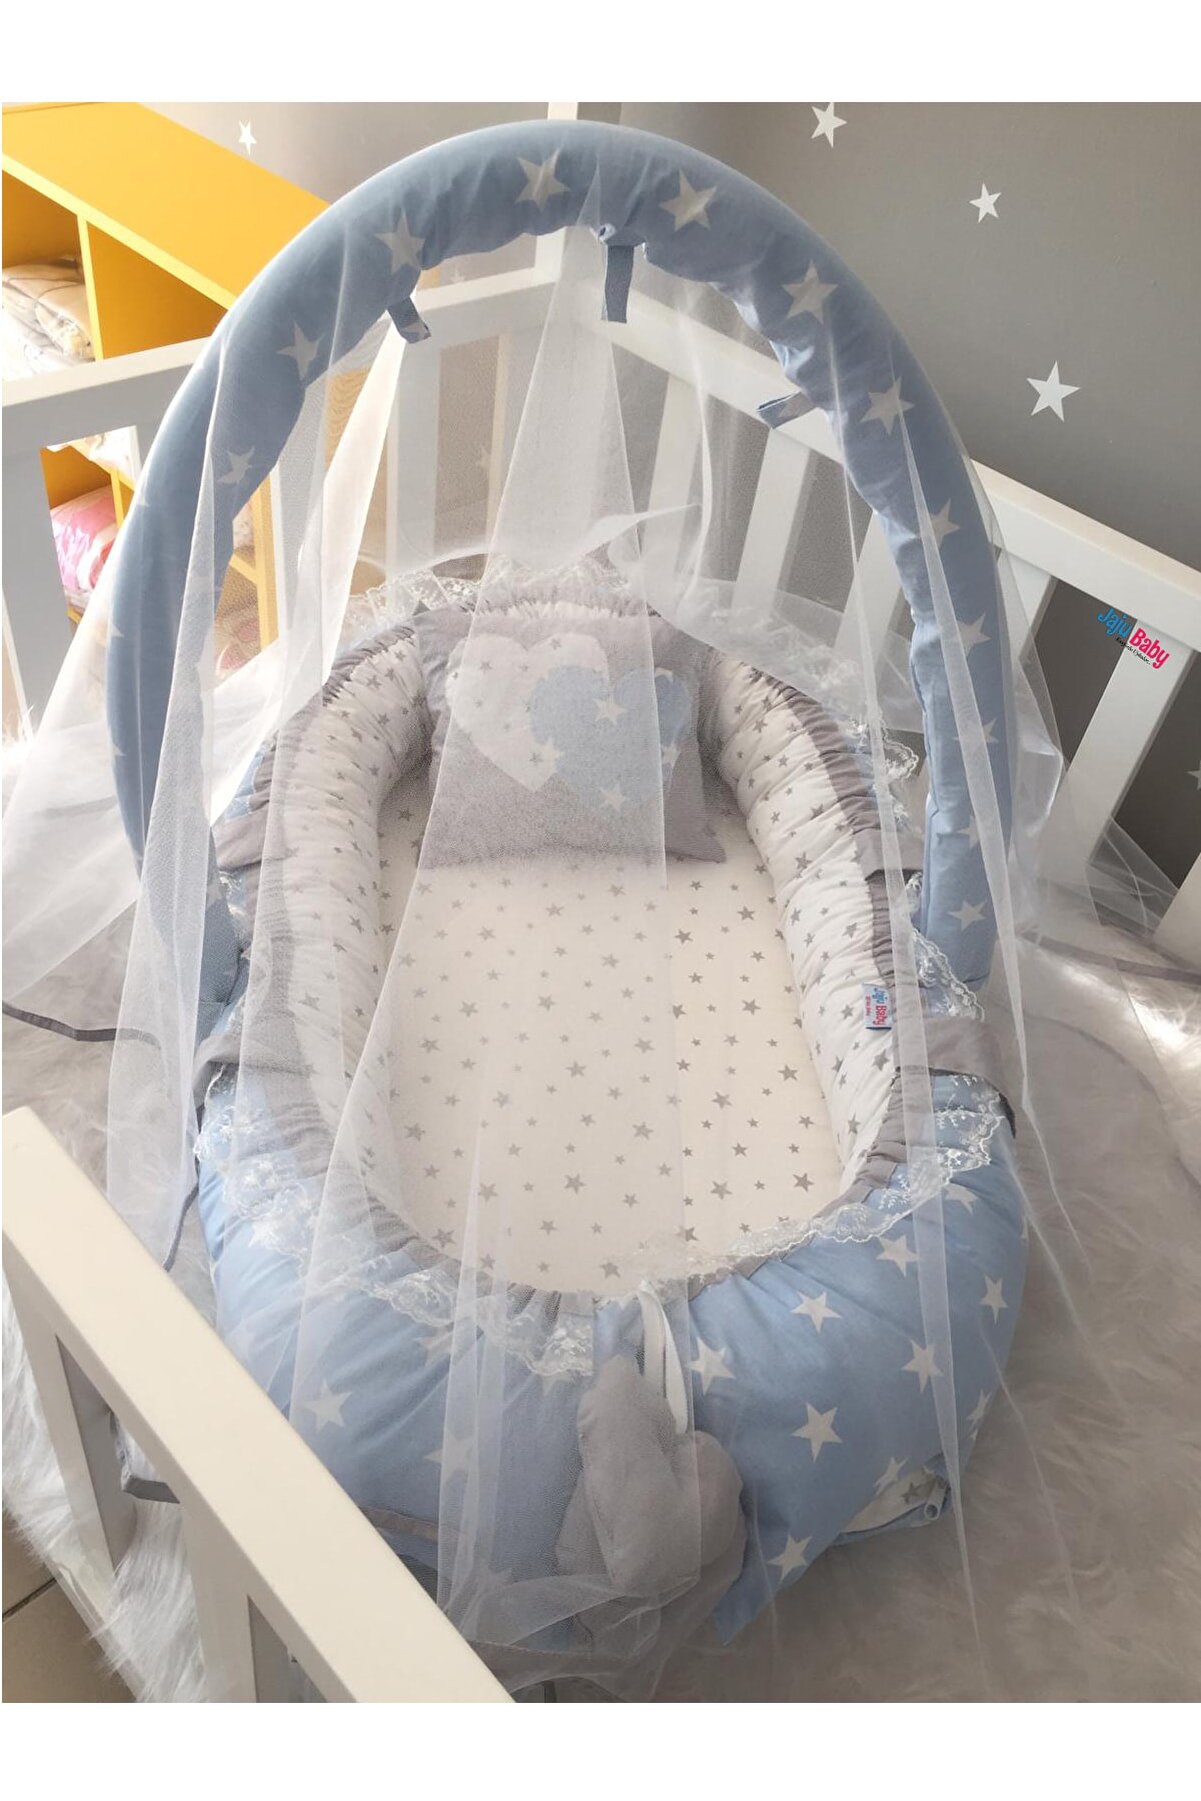 Jaju Baby Nest Mavi -yıldız Desenli Cibinlik Ve Oyuncak Askılı Lüx Tasarım Jaju-babynest